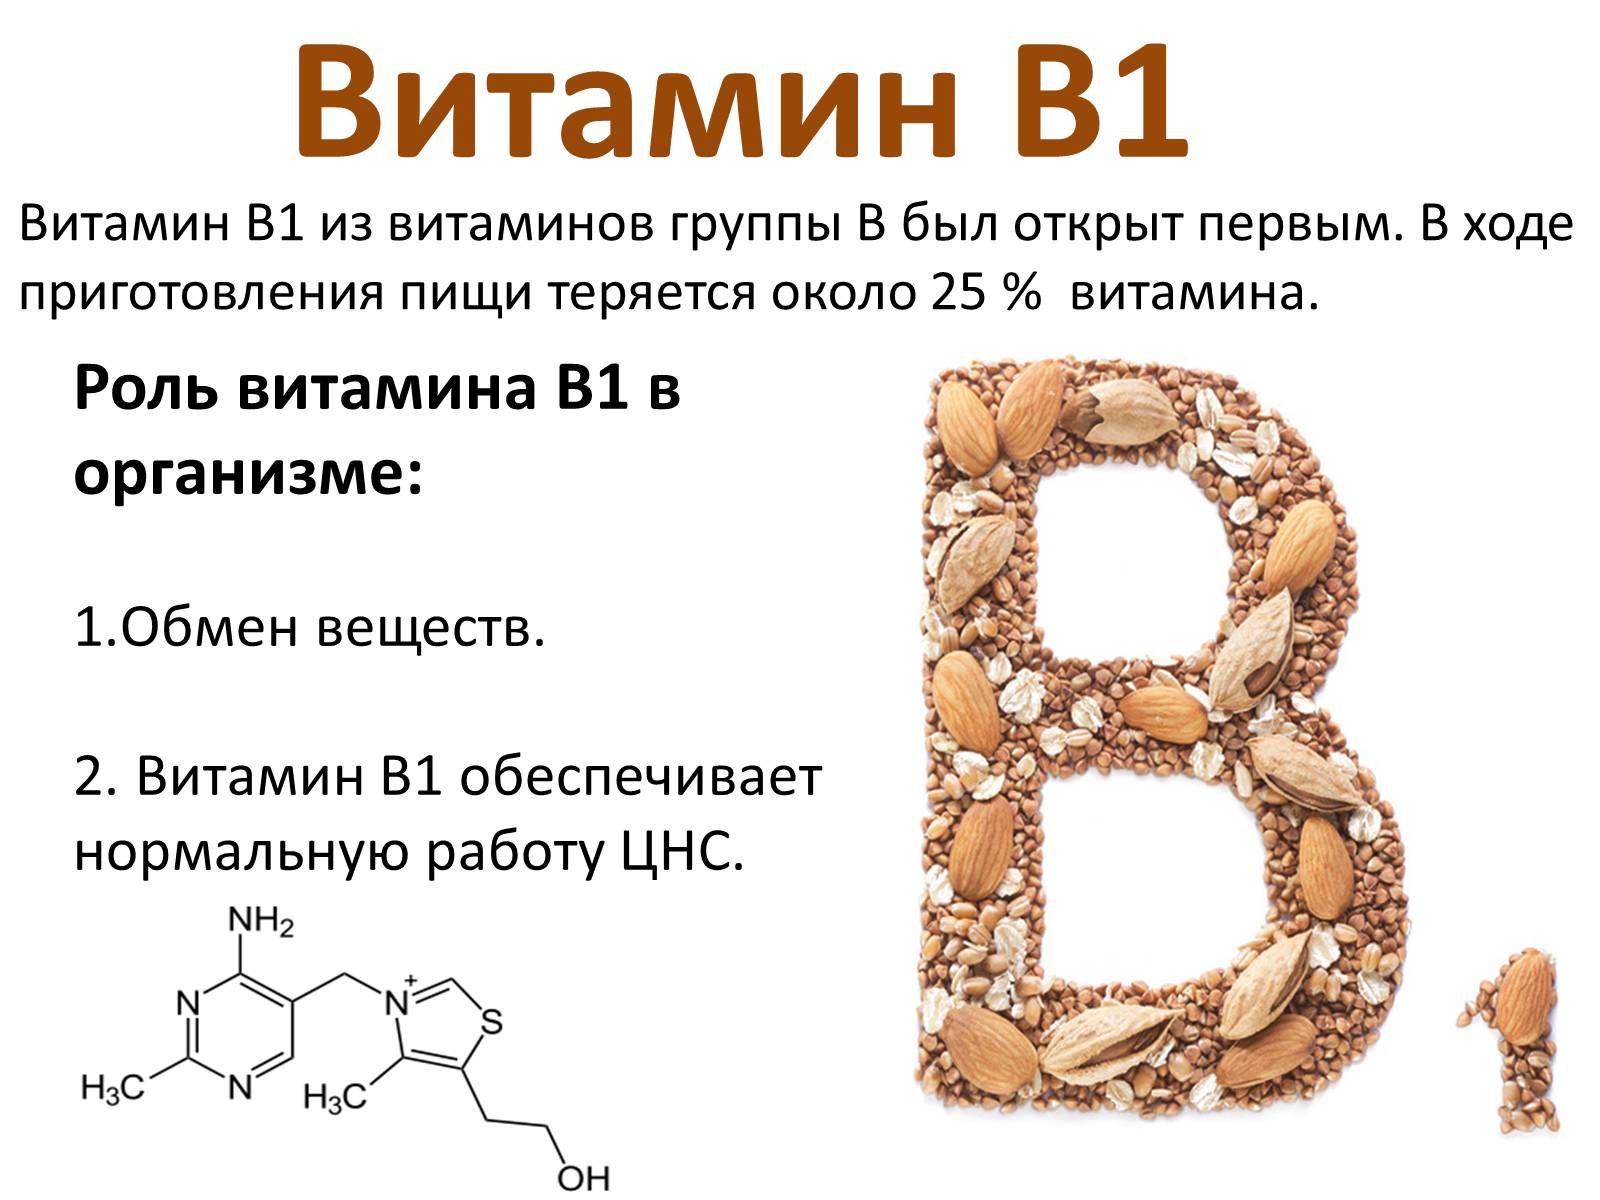 Витамин b1 (тиамин): характеристика, полезные свойства и применение в медицине